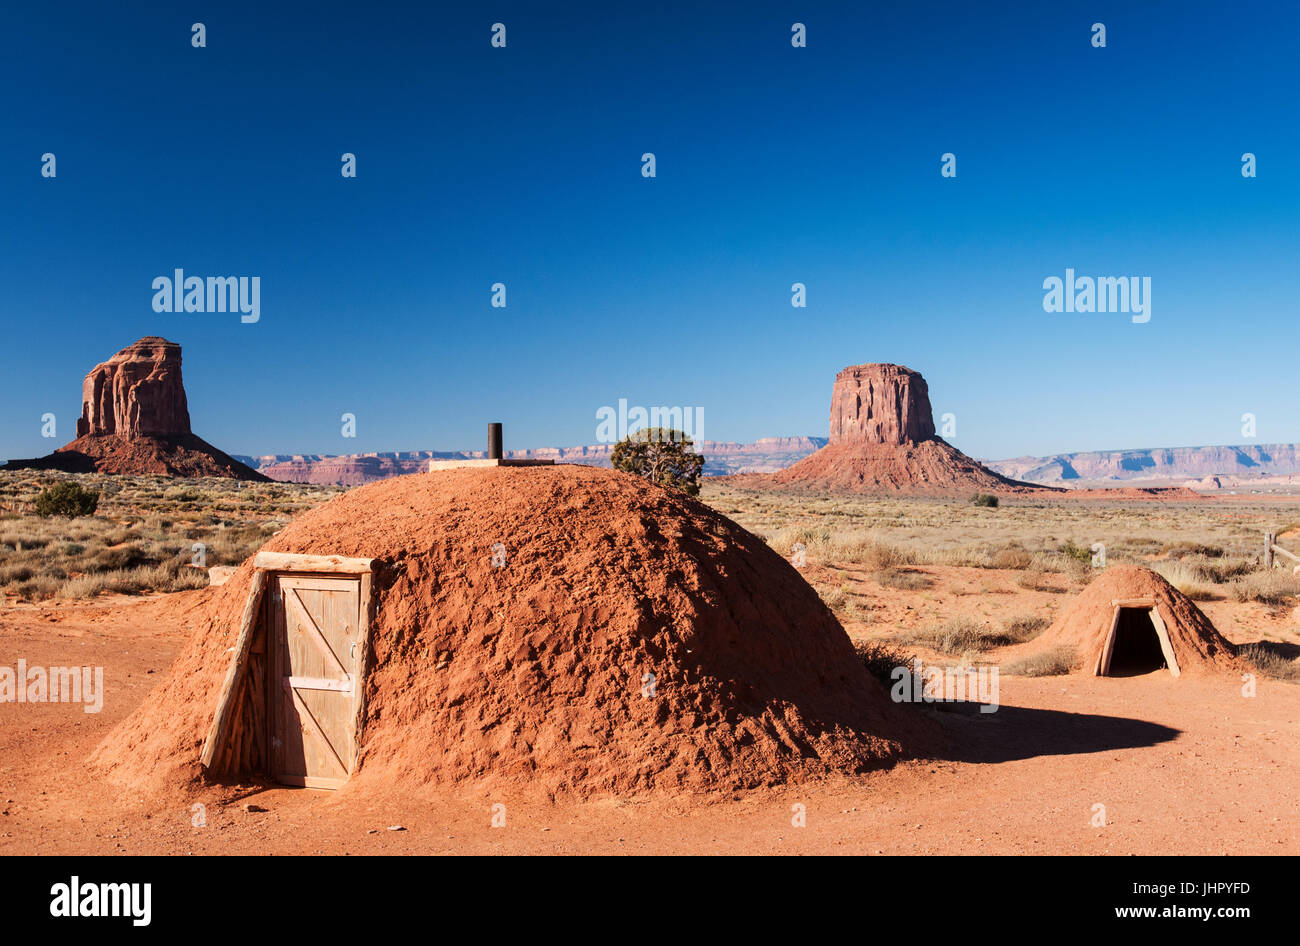 Navajo Hogan, Navajo Tribal Park, Monument Valley Arizona Stock Photo